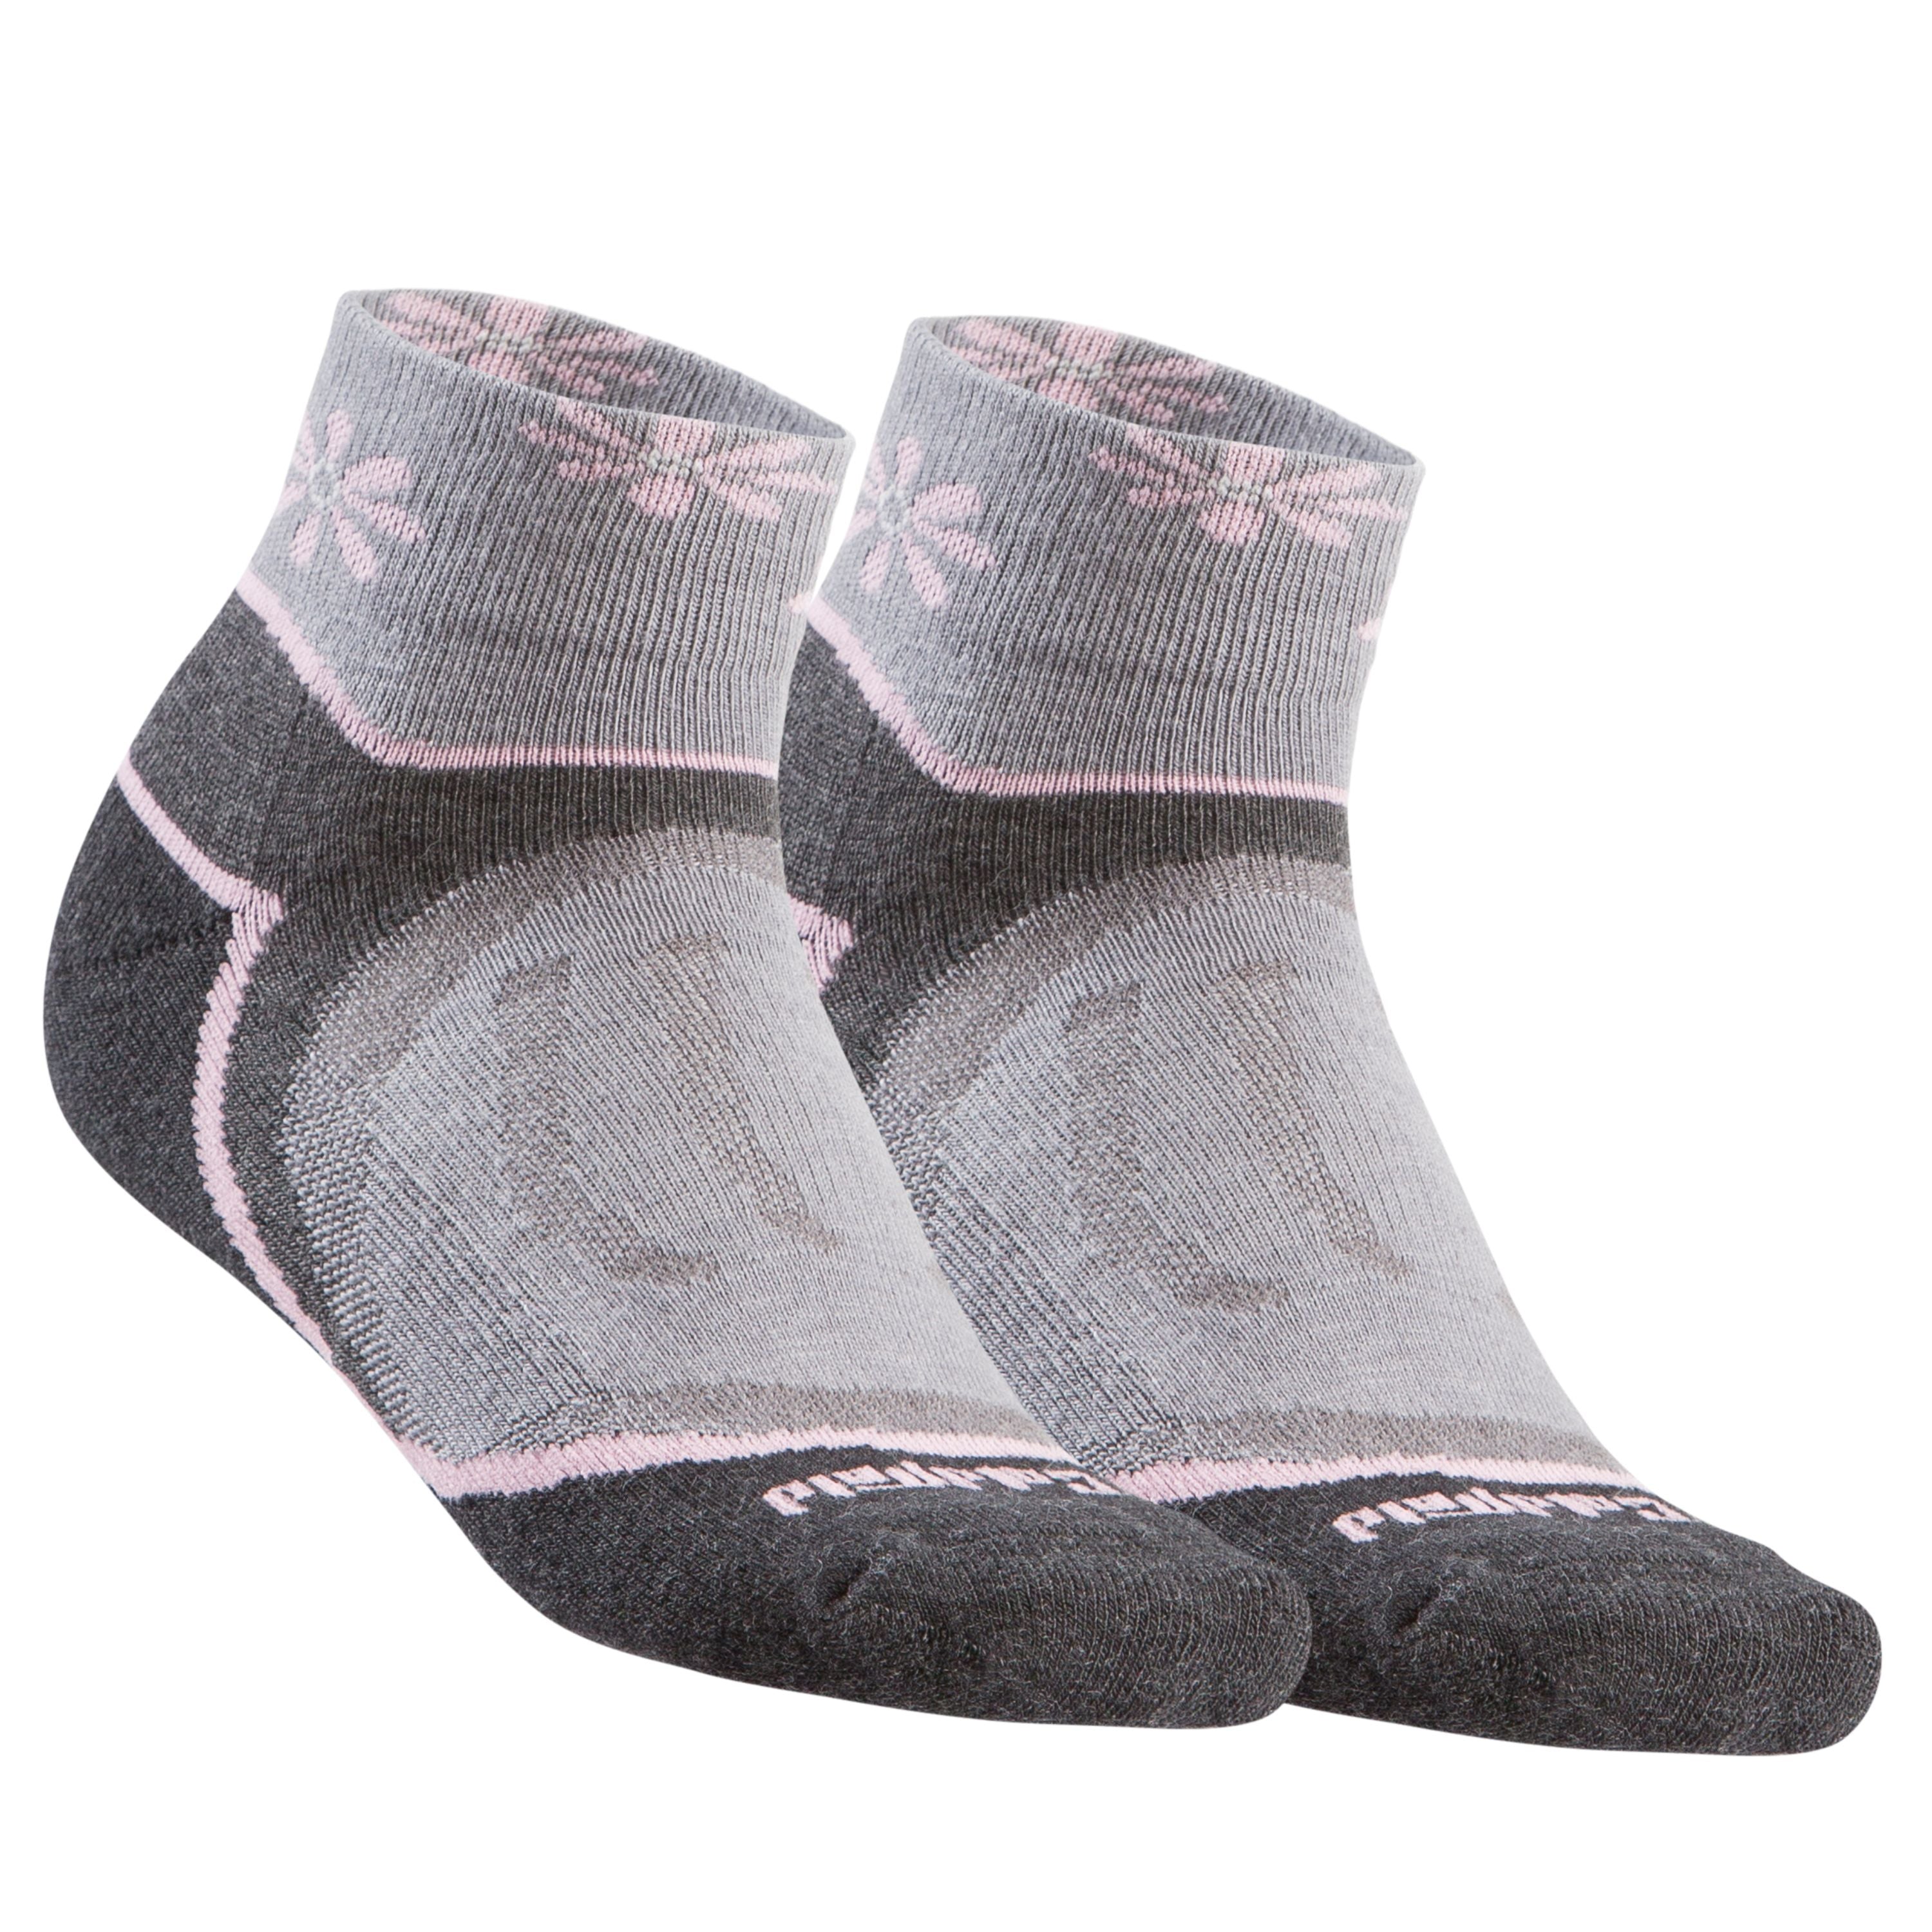 Merino short socks - Women's